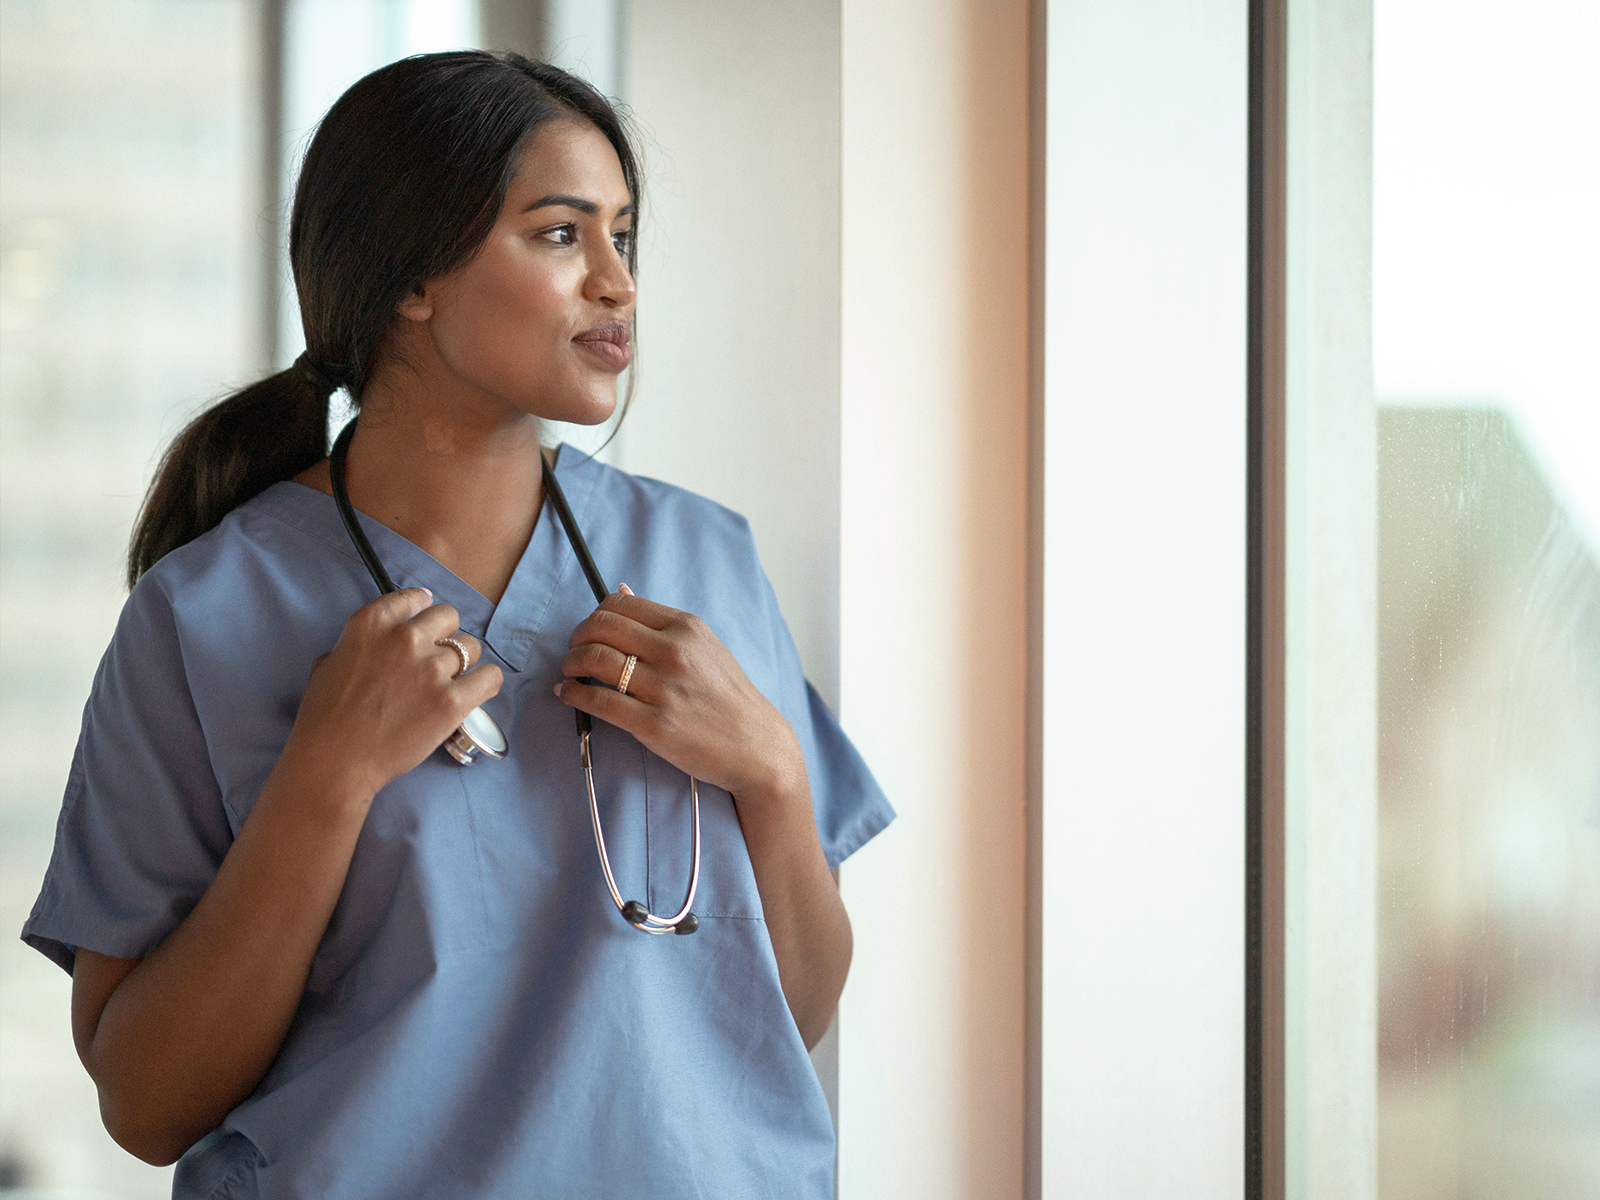 Kvinnlig läkare i blå läkartröja och stetoskop runt halsen blickar ut genom ett fönster